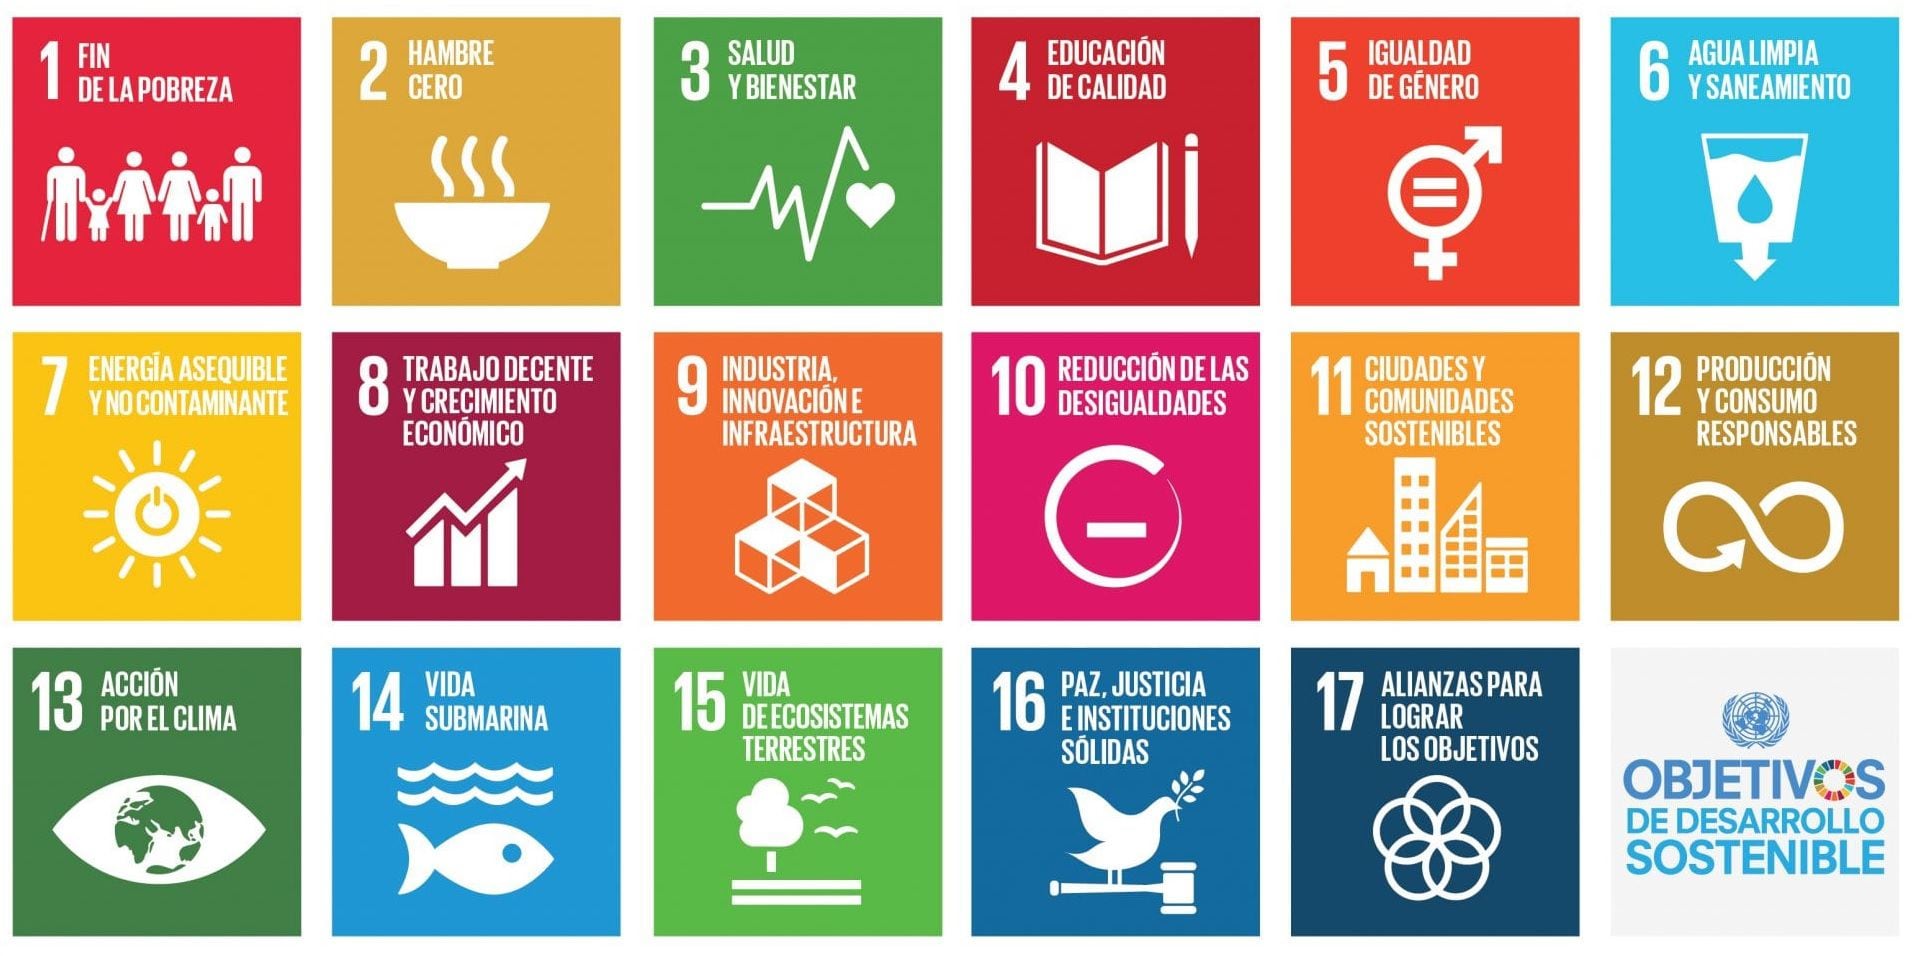 Objetivos de Desarrollo Sostenible (ODS) para 2030 | Gráfico NU